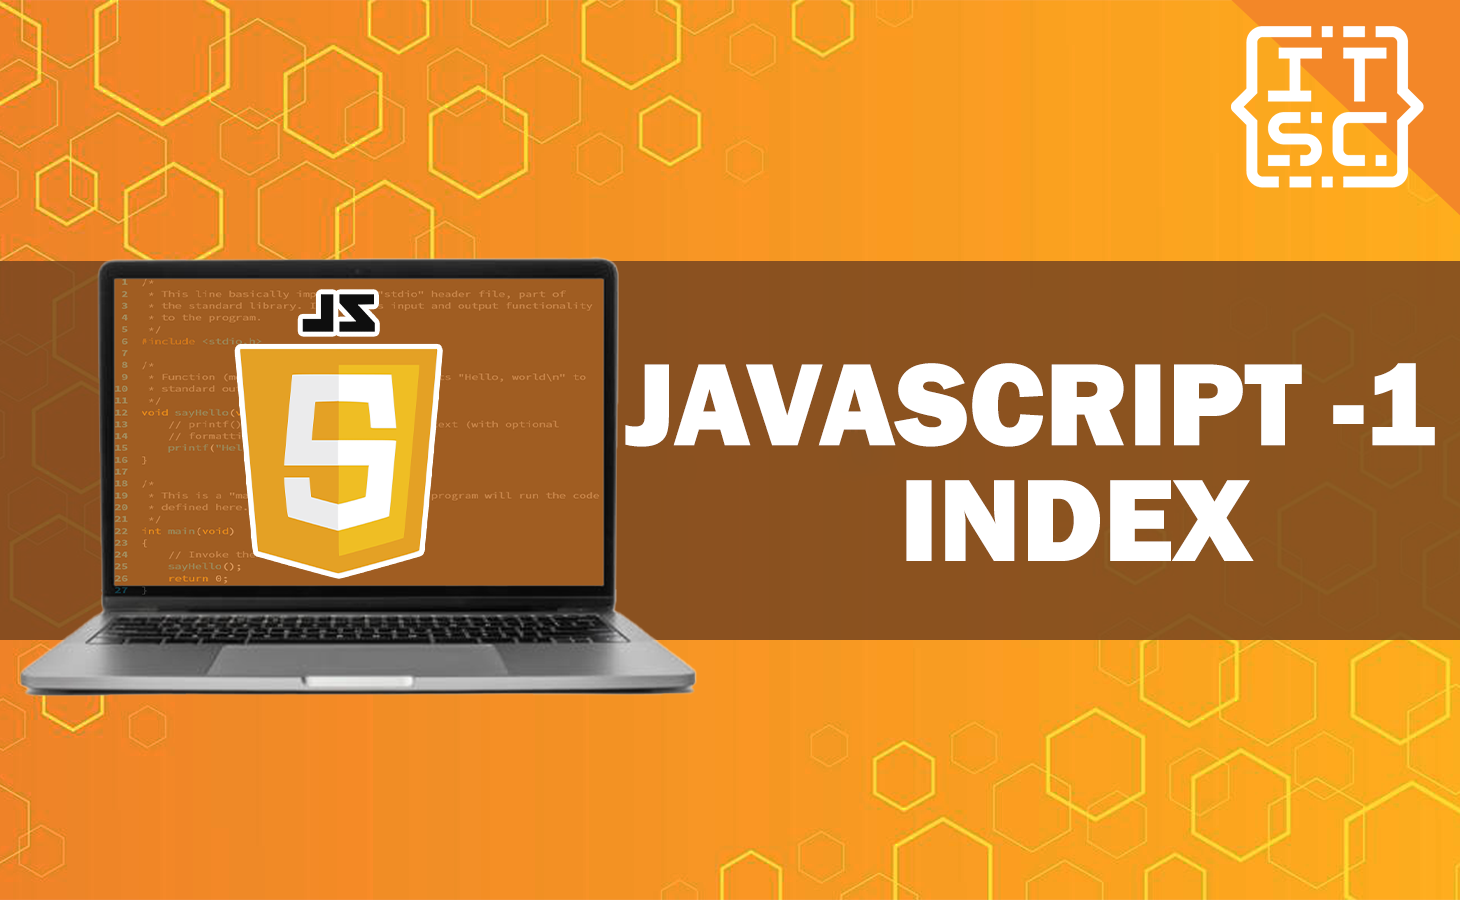 Understanding the -1 Index in JavaScript Arrays